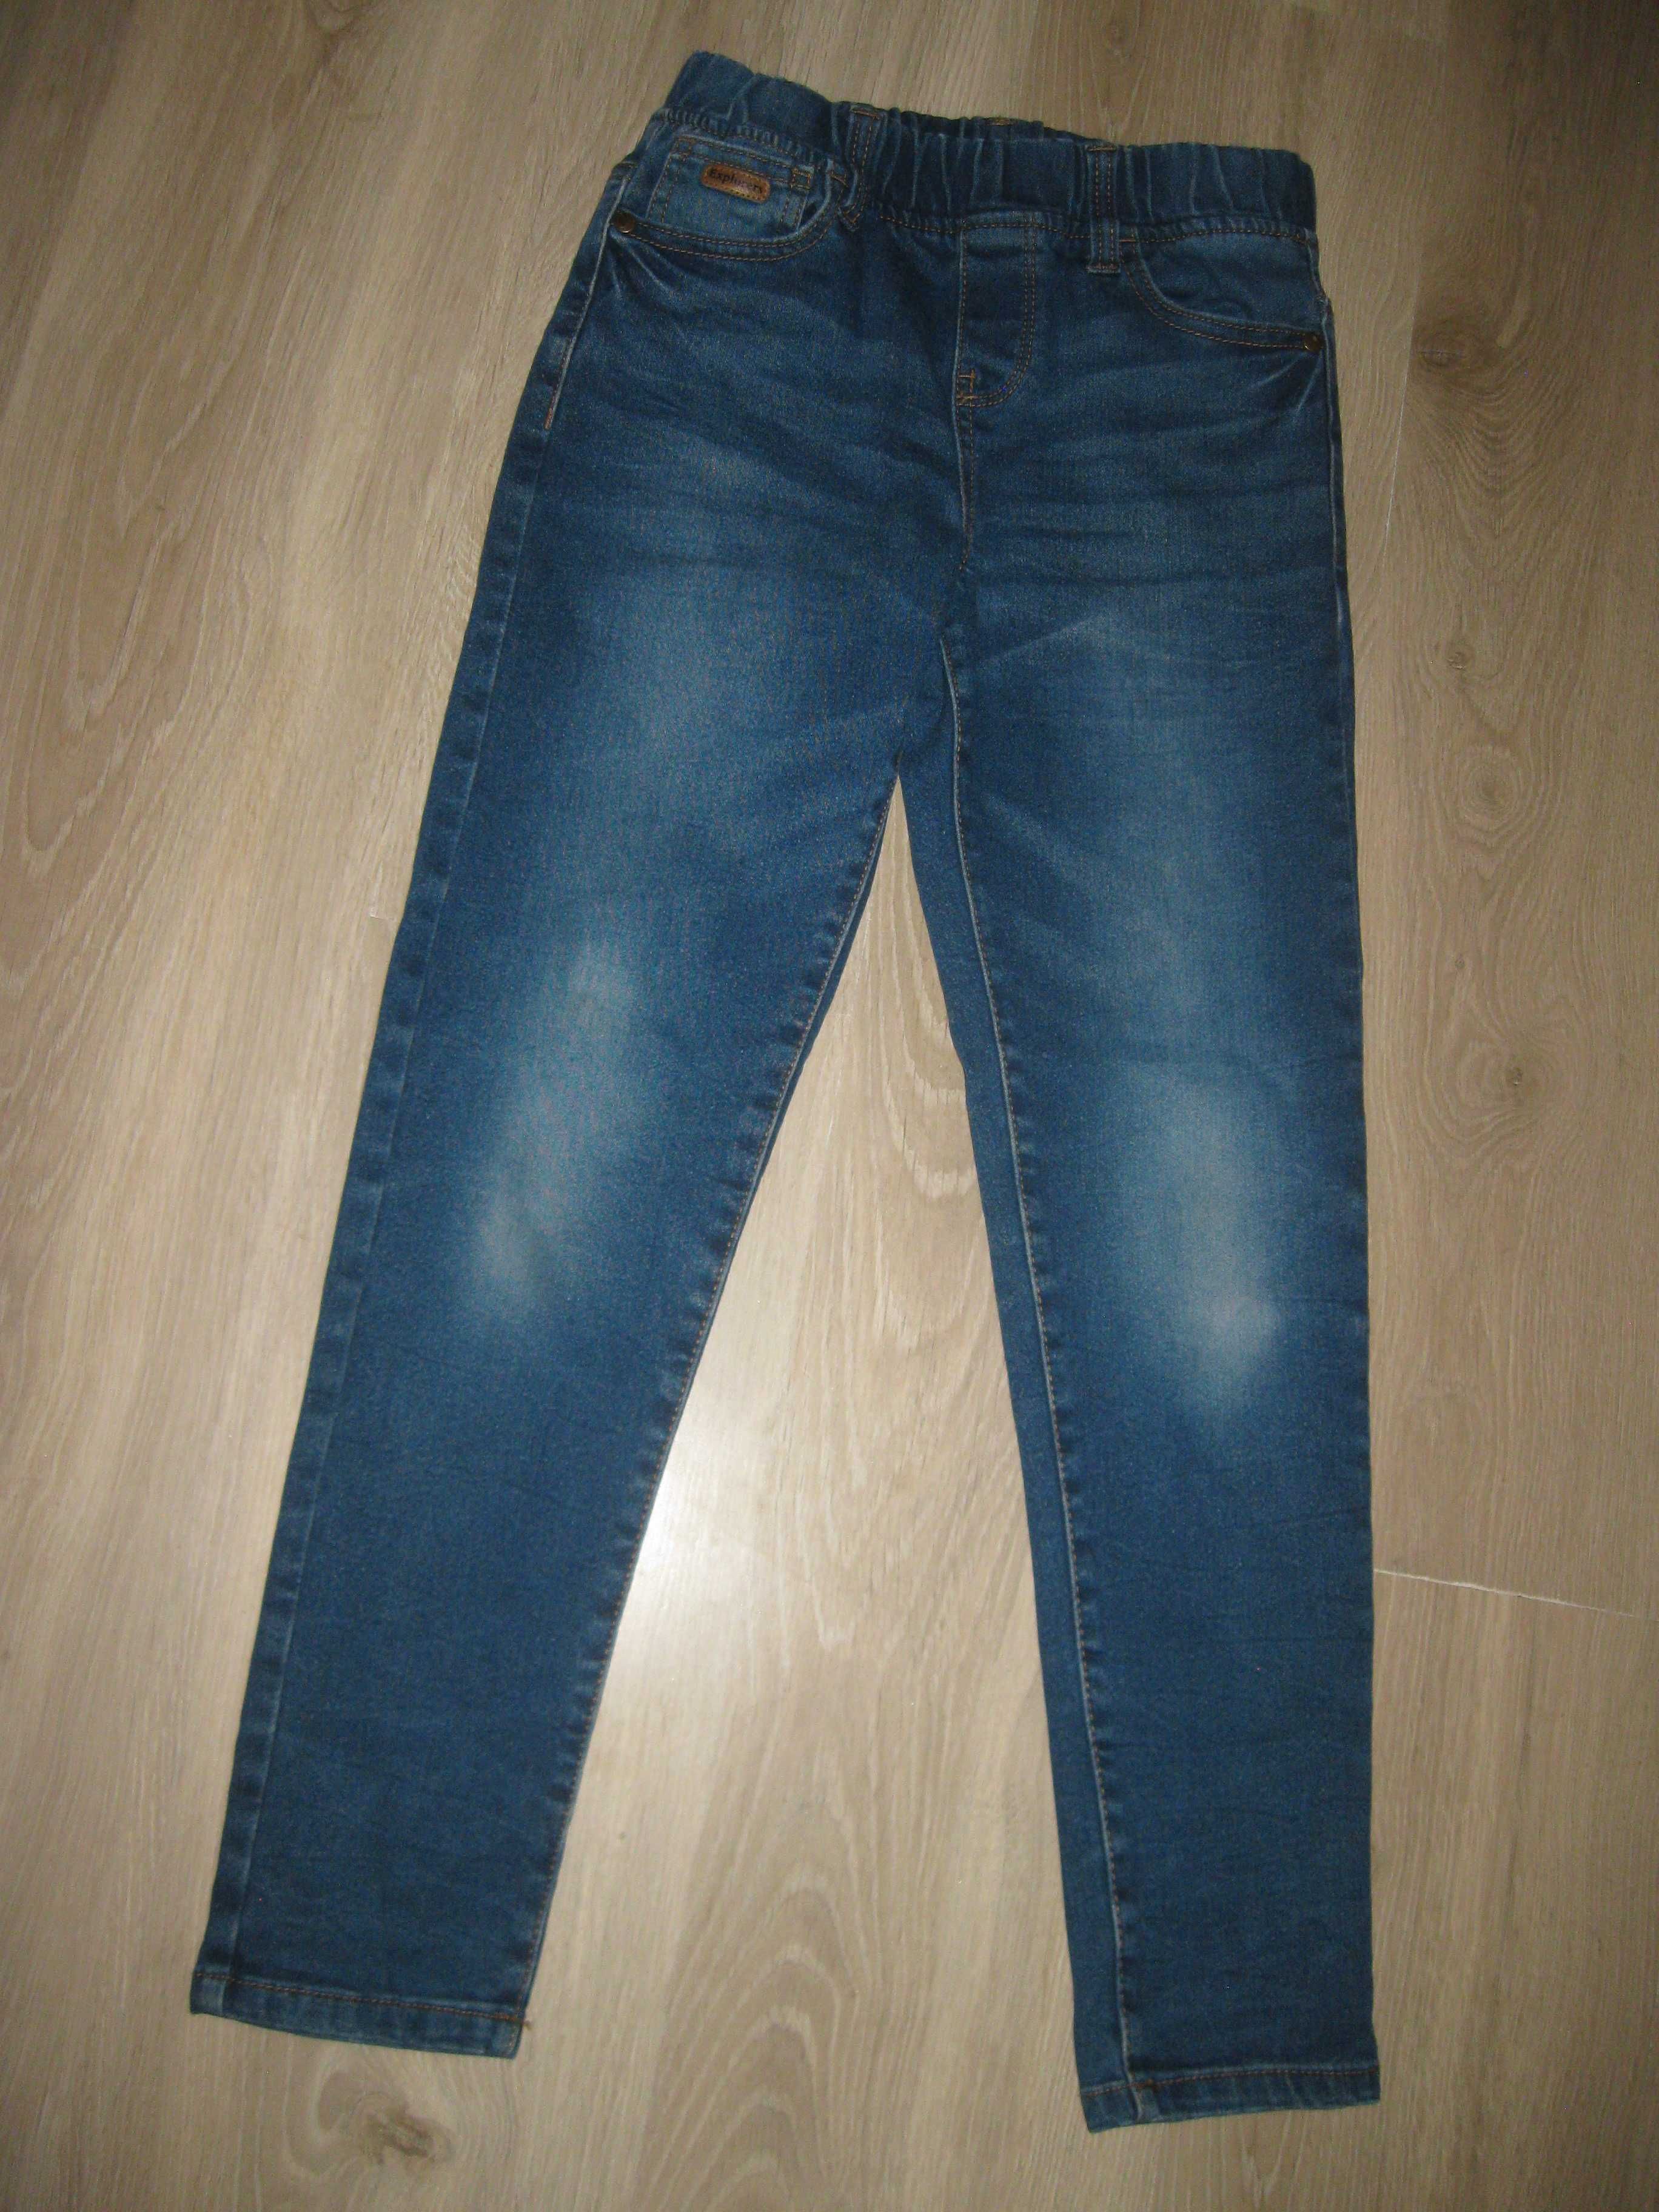 Spodnie jeansowe rozmiar 134 cm 8-9 lat